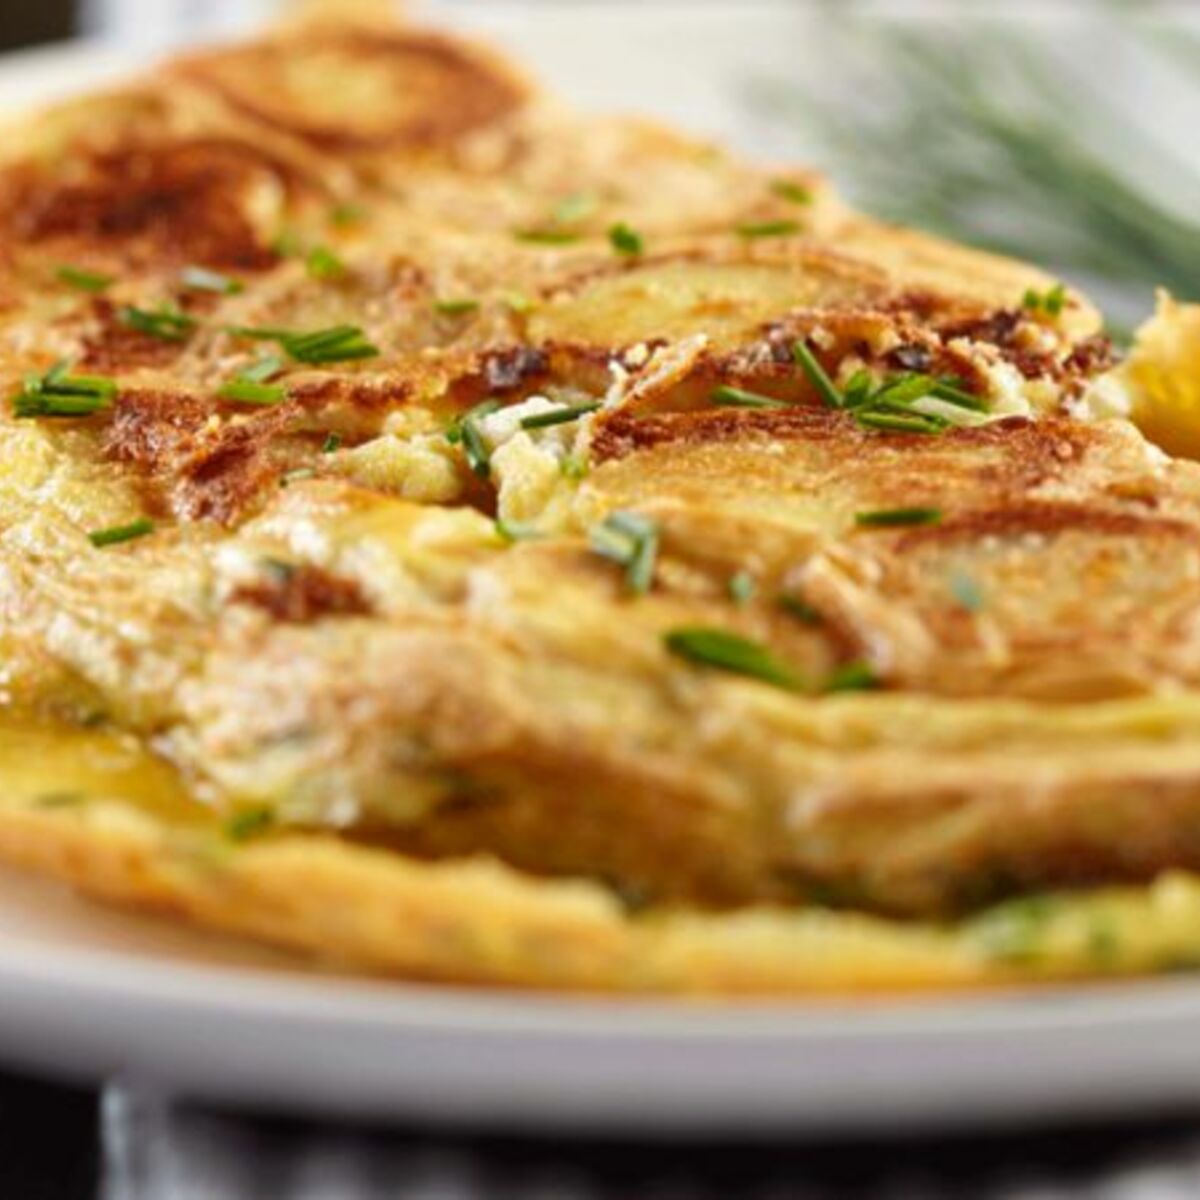 Comment réussir une omelette parfaite